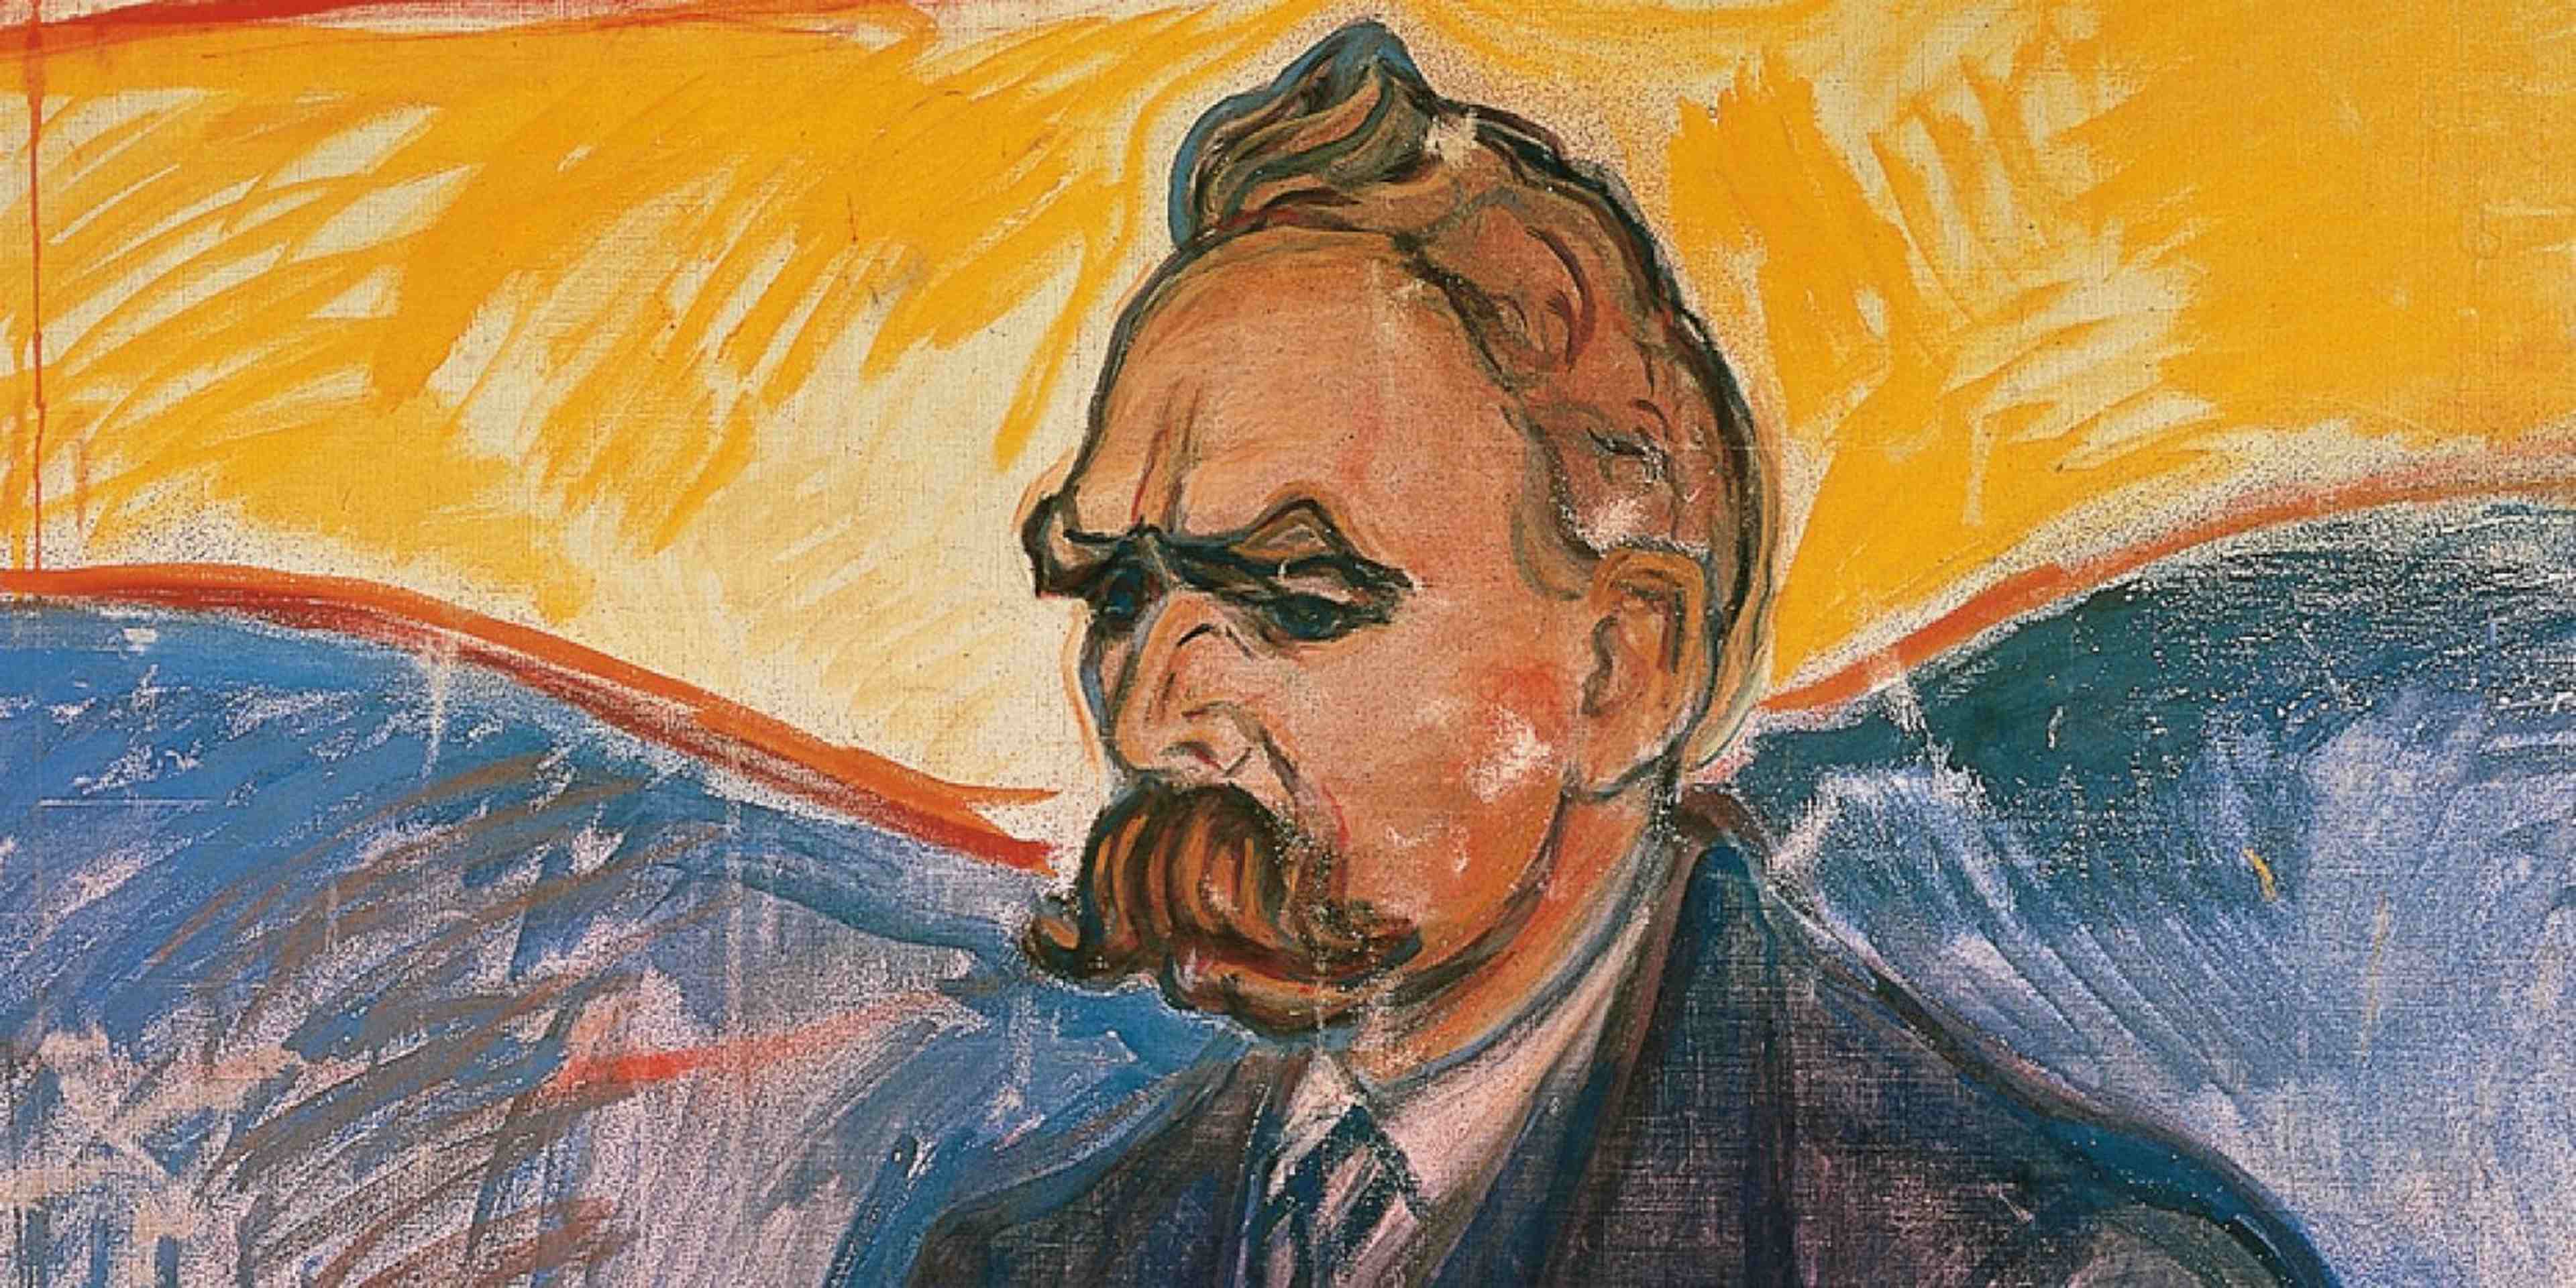 Quelle est notre part de liberté dans la volonté de puissance selon Nietzsche?